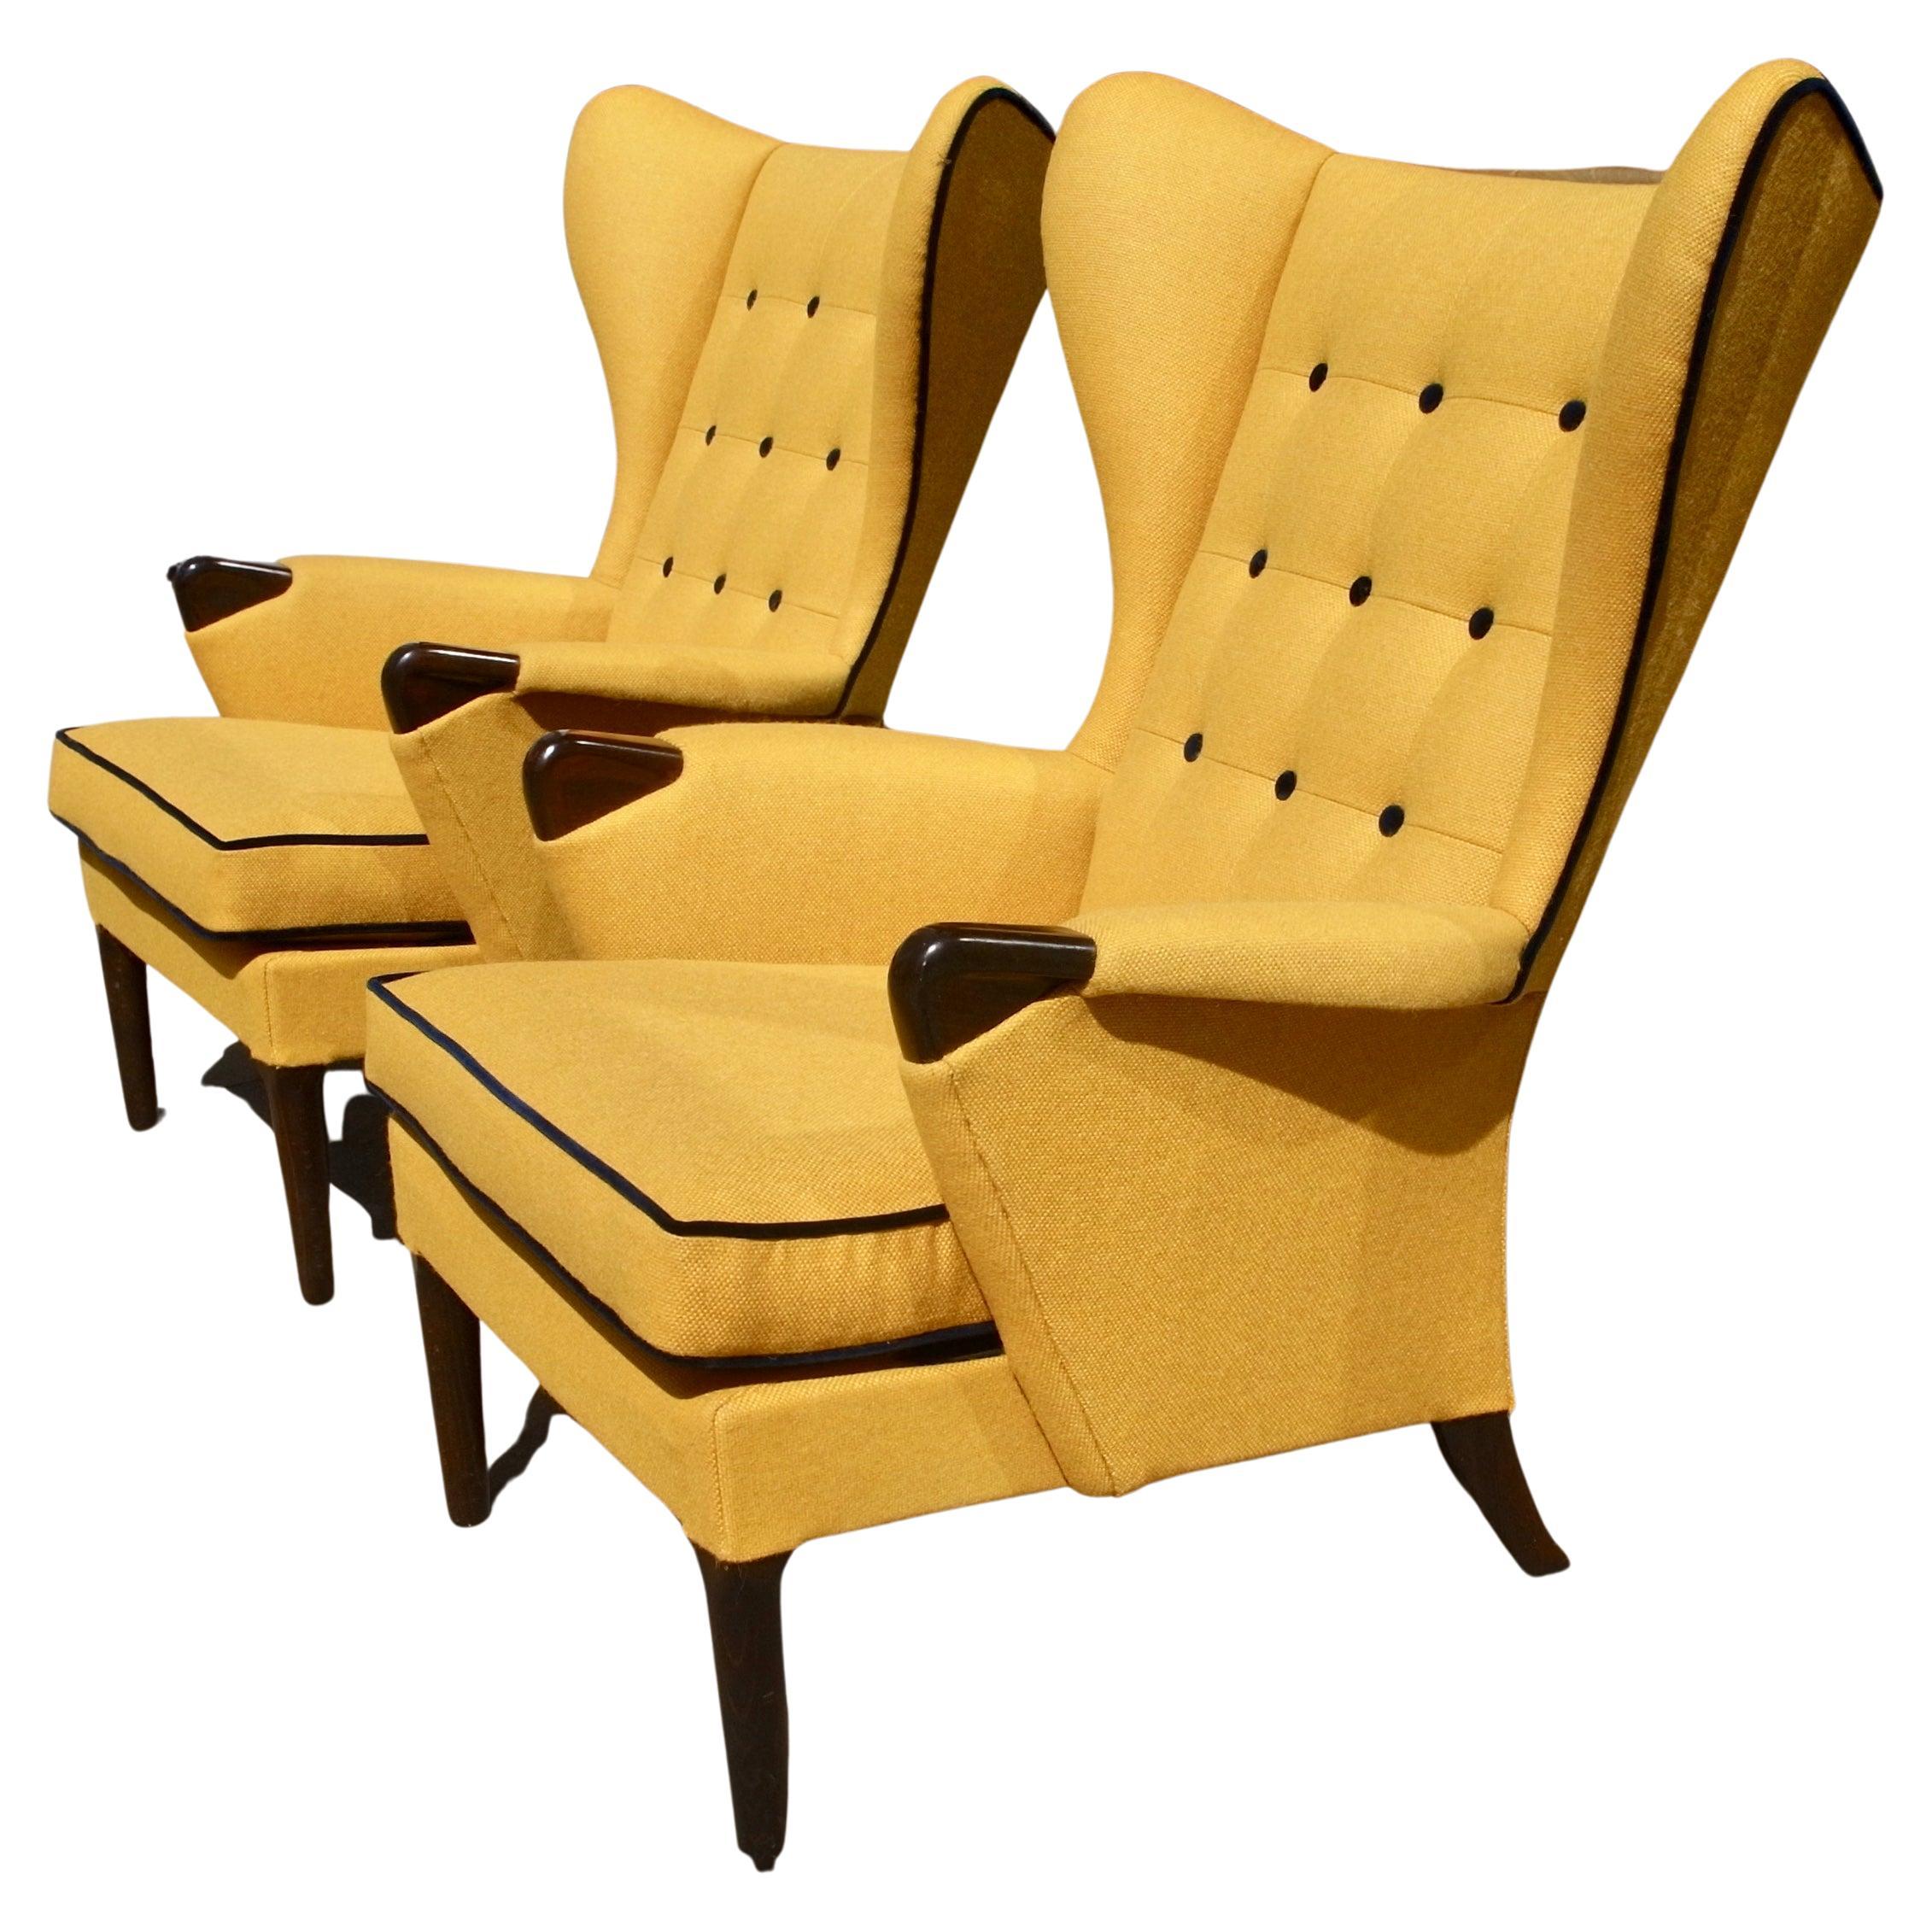 Paire de fauteuils britanniques Wingback des années 1950 tapissés en textile jaune de qualité